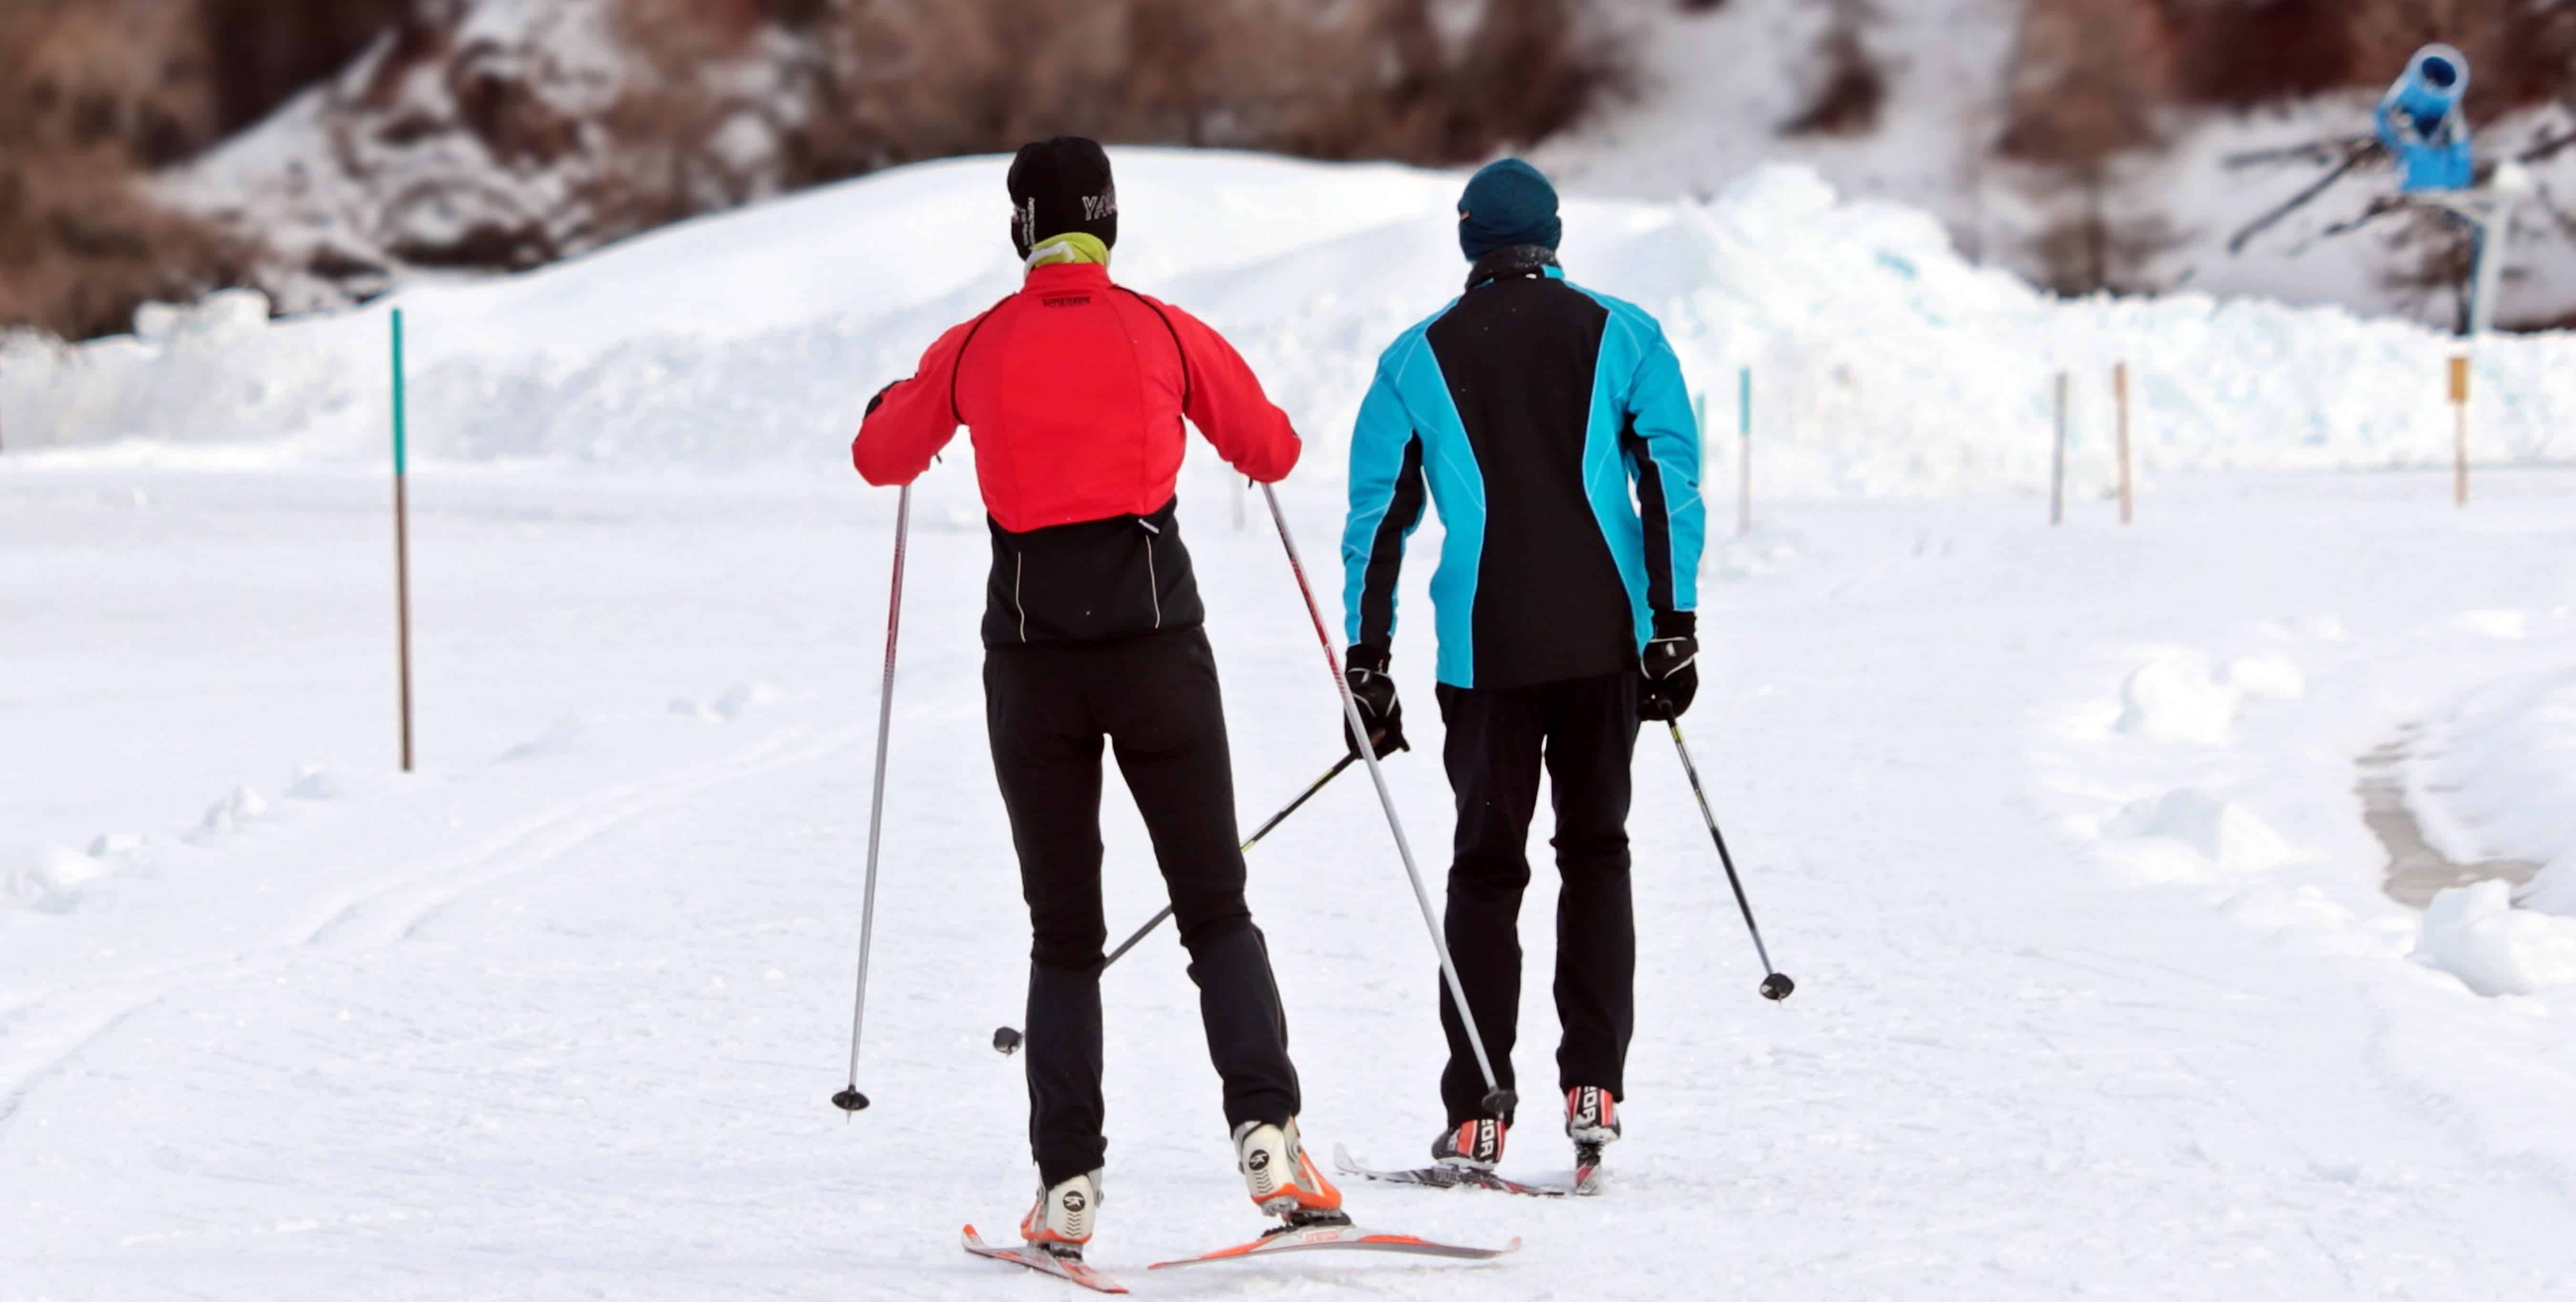 Imagen gratis: hombre, esquí de fondo, sonriendo, vertical, gafas de sol,  invierno, frío, nieve, diversión, naturaleza